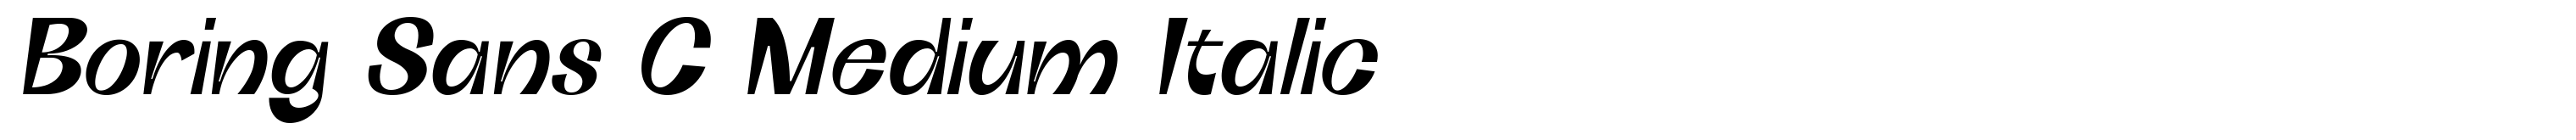 Boring Sans C Medium Italic